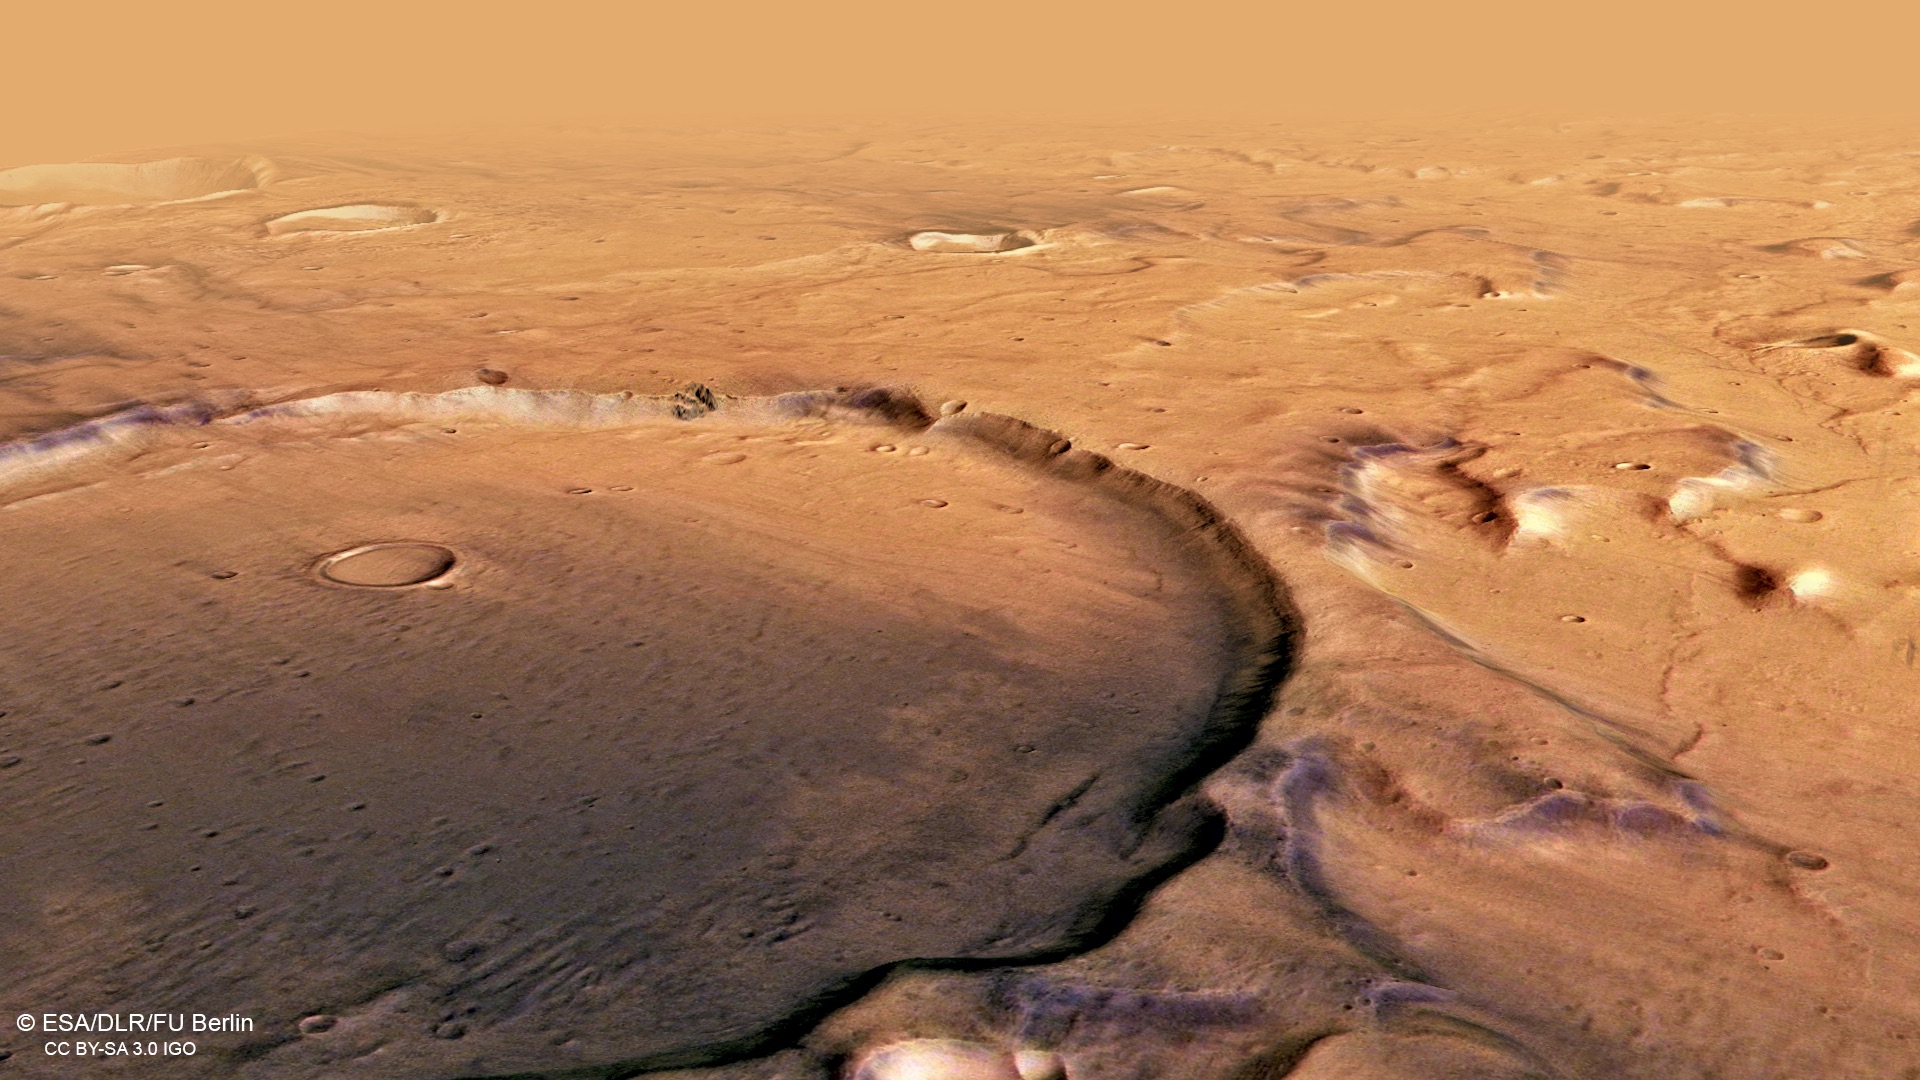 Planeetta Mars. Uudet INCREDIBLE -kuvat ovat hämmästyttäneet koko ihmiskunnan terra cimmerian